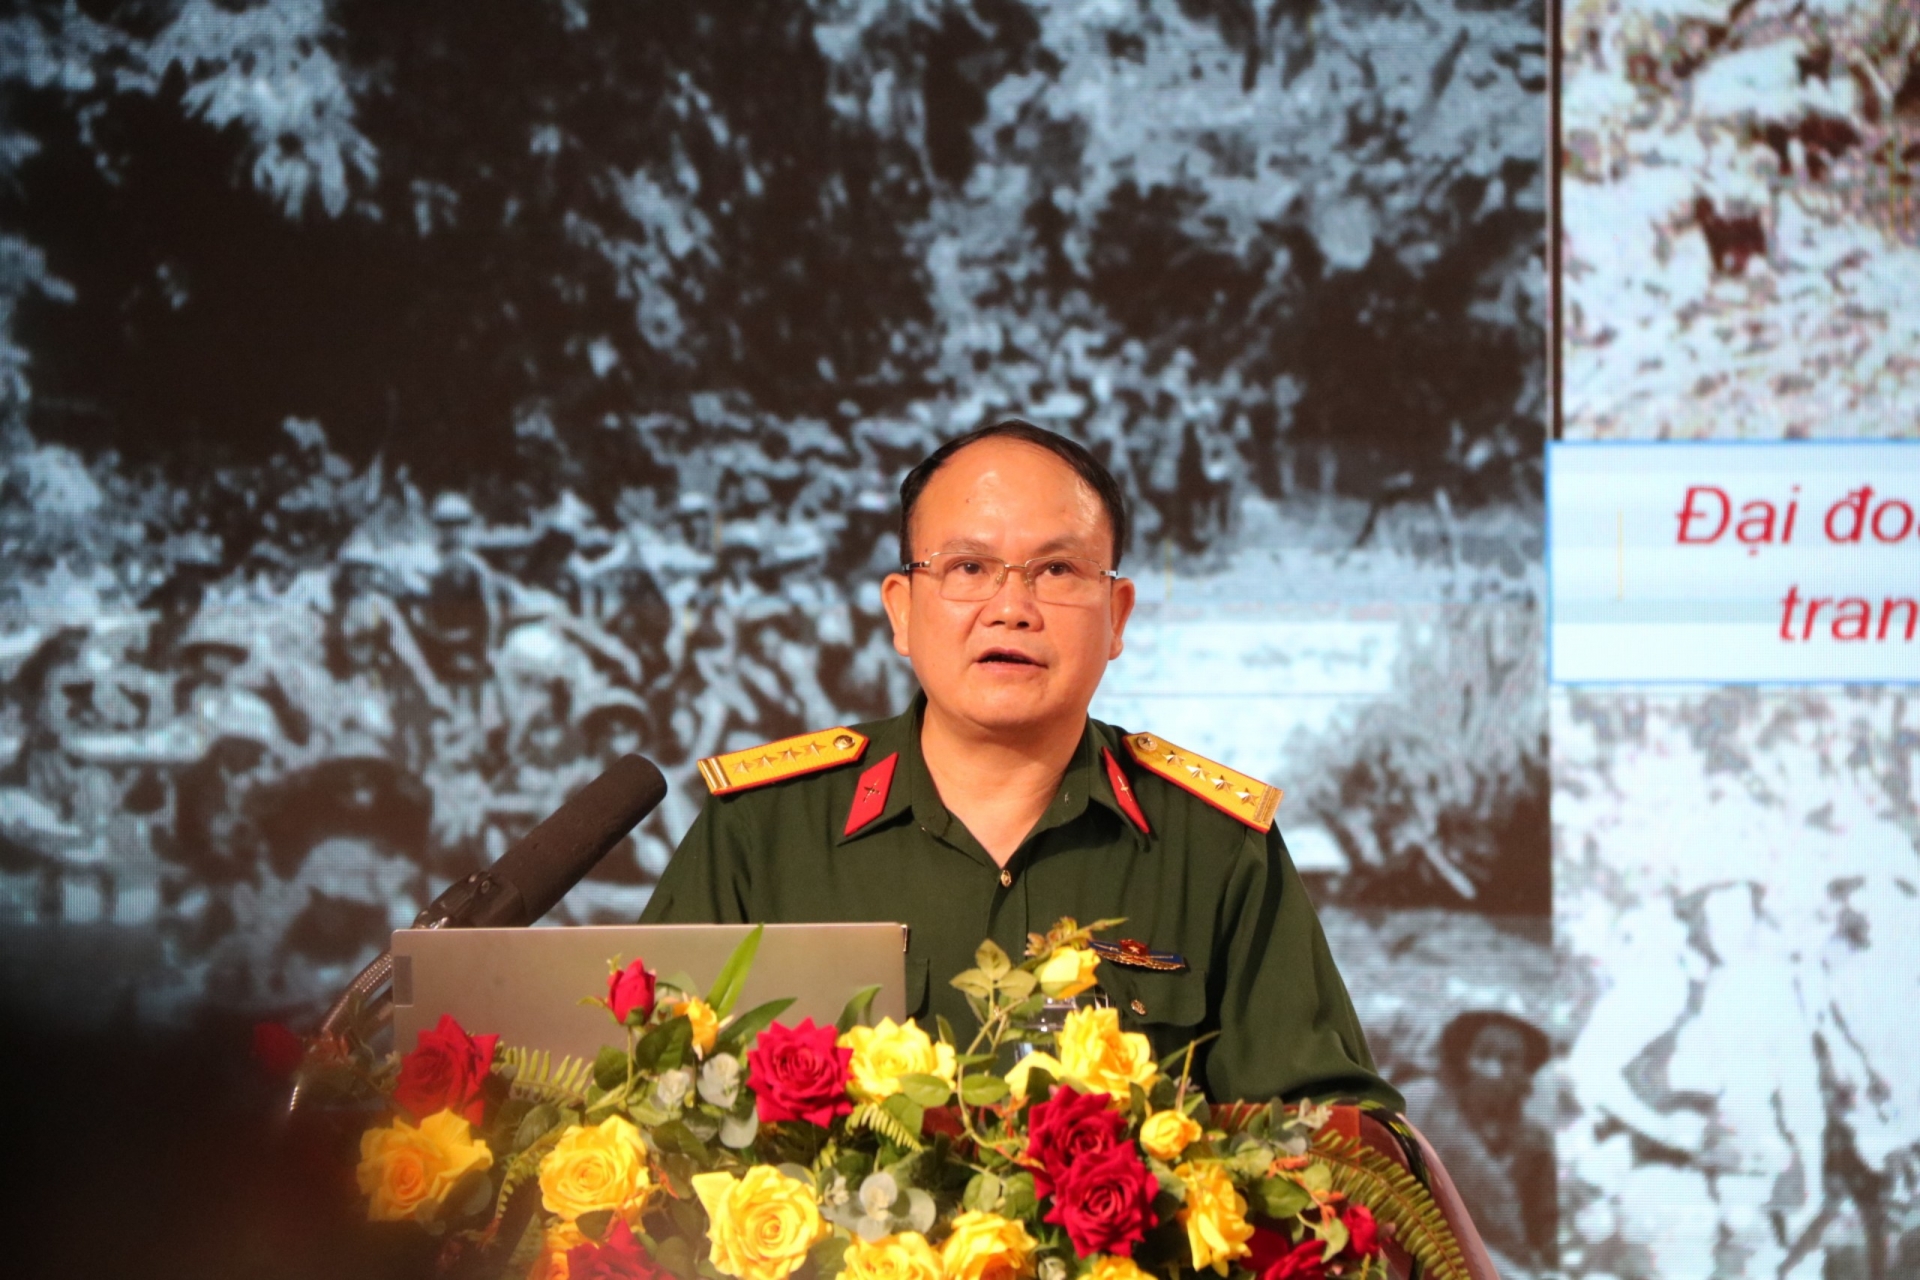 Đại tá, Phó Giáo sư, Tiến sĩ Nguyễn Sỹ Họa – Khoa Mác - Lênin, tư tưởng Hồ Chí Minh – Học viện Lục quân tuyên truyền tại buổi nói chuyện